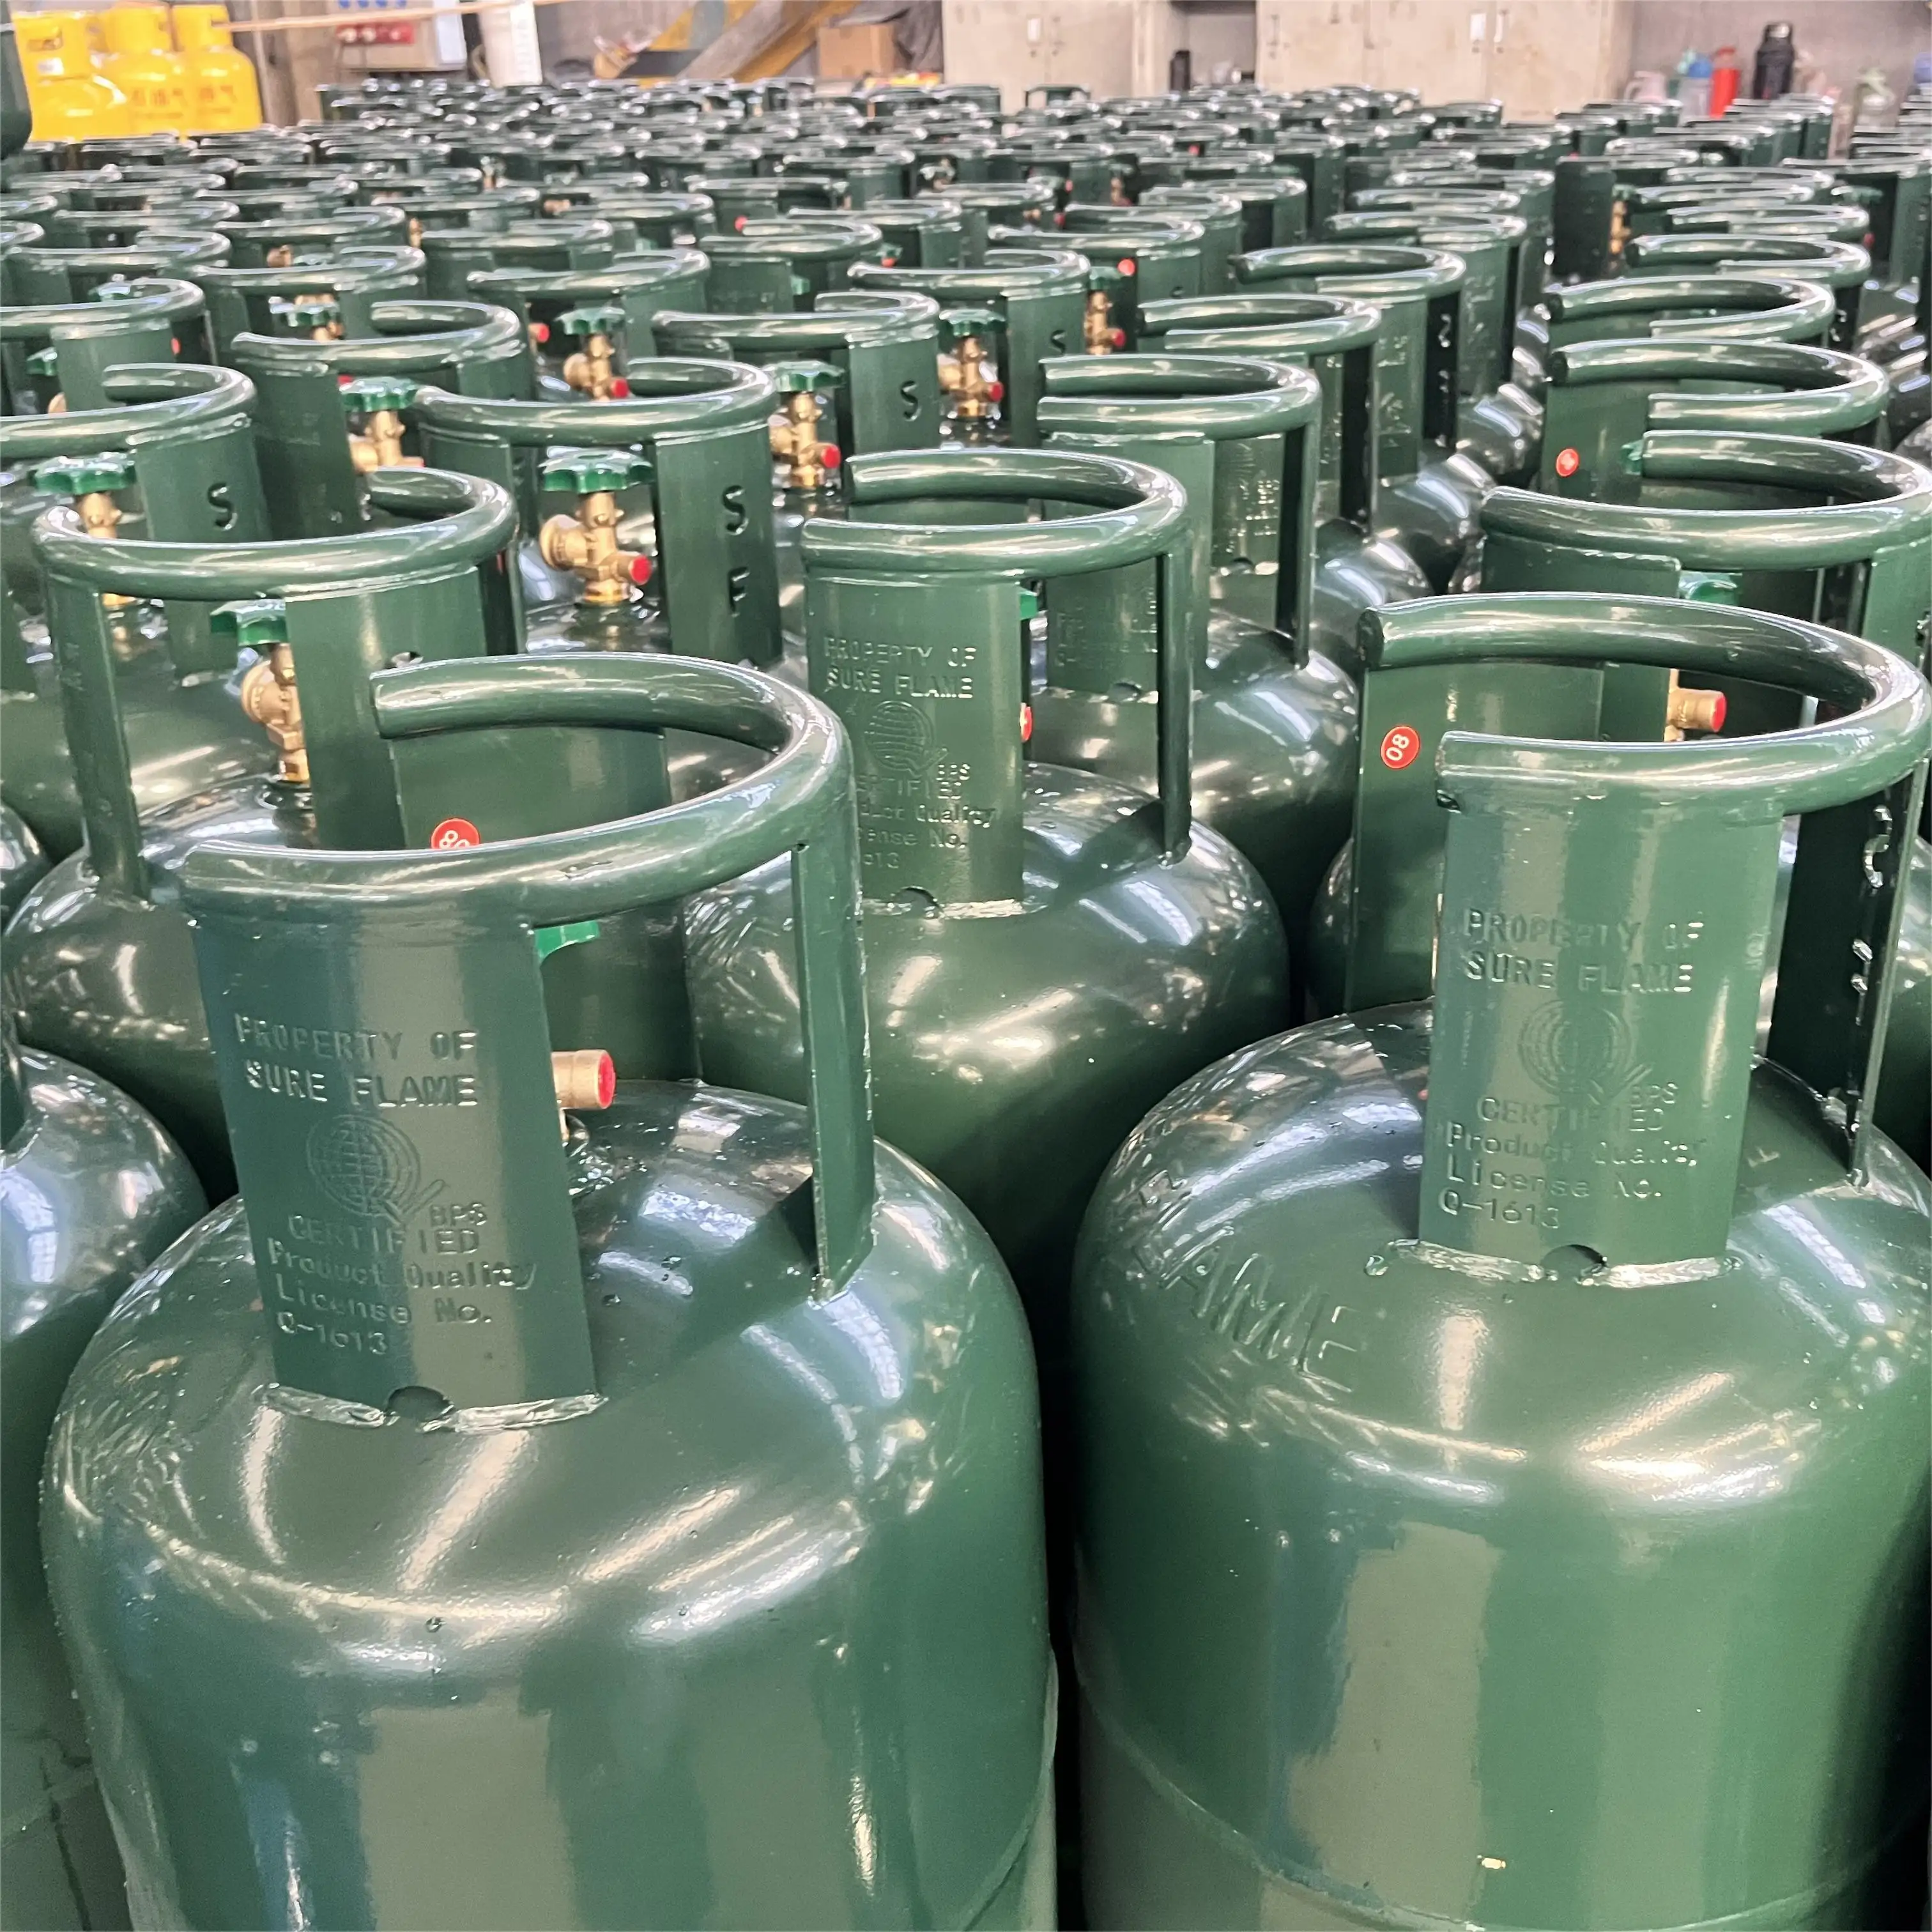 Zhangshan 6kg bombola di Gas gpl bombola di Gas riutilizzabile vuota bombola di Gas con il prezzo basso